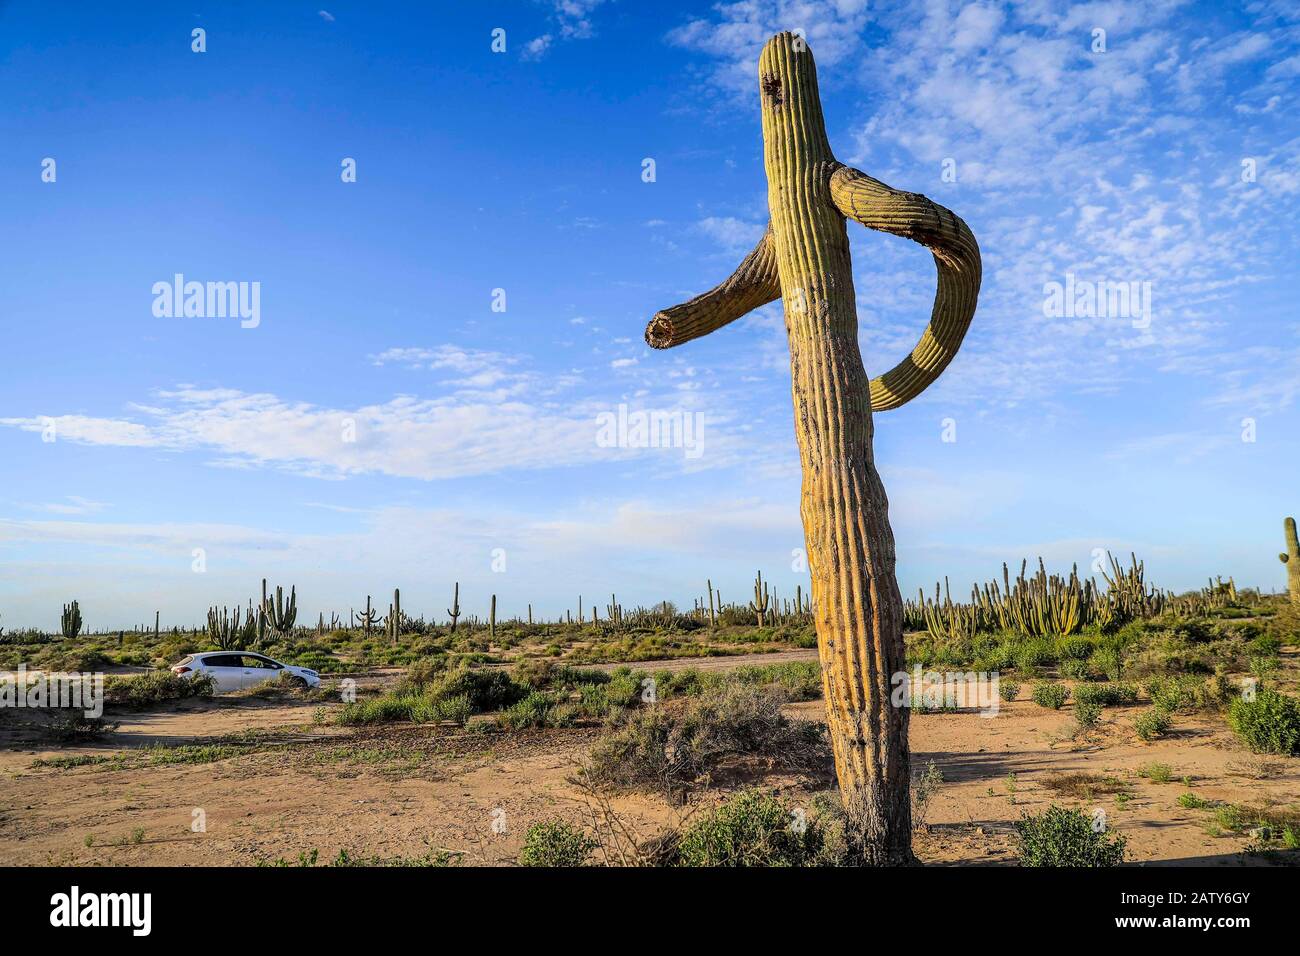 Saguaro or Sahuaro (Carnegiea gigantea) shaped like a man. Typical columnar cactus from the Sonoran Desert, Mexico. monotípicoc is a species of greater size among the cacti .... KEY WORDS: surreal, alien, extraterrestrial, strange, shape, malformation, twisted, tree brazes, bony thorns, rare, twisted, crooked, crooked.  saguaro o sahuaro (Carnegiea gigantea) con forma de un hombre. cactus columnar típico del Desierto de Sonora, Mexico. monotípicoc es una especies de mayor porte entre las cactáceas....PALABRAS CLAVES: surreal, alienigena, extraterreste, extraño, forma, malformacion, retorcido, Stock Photo